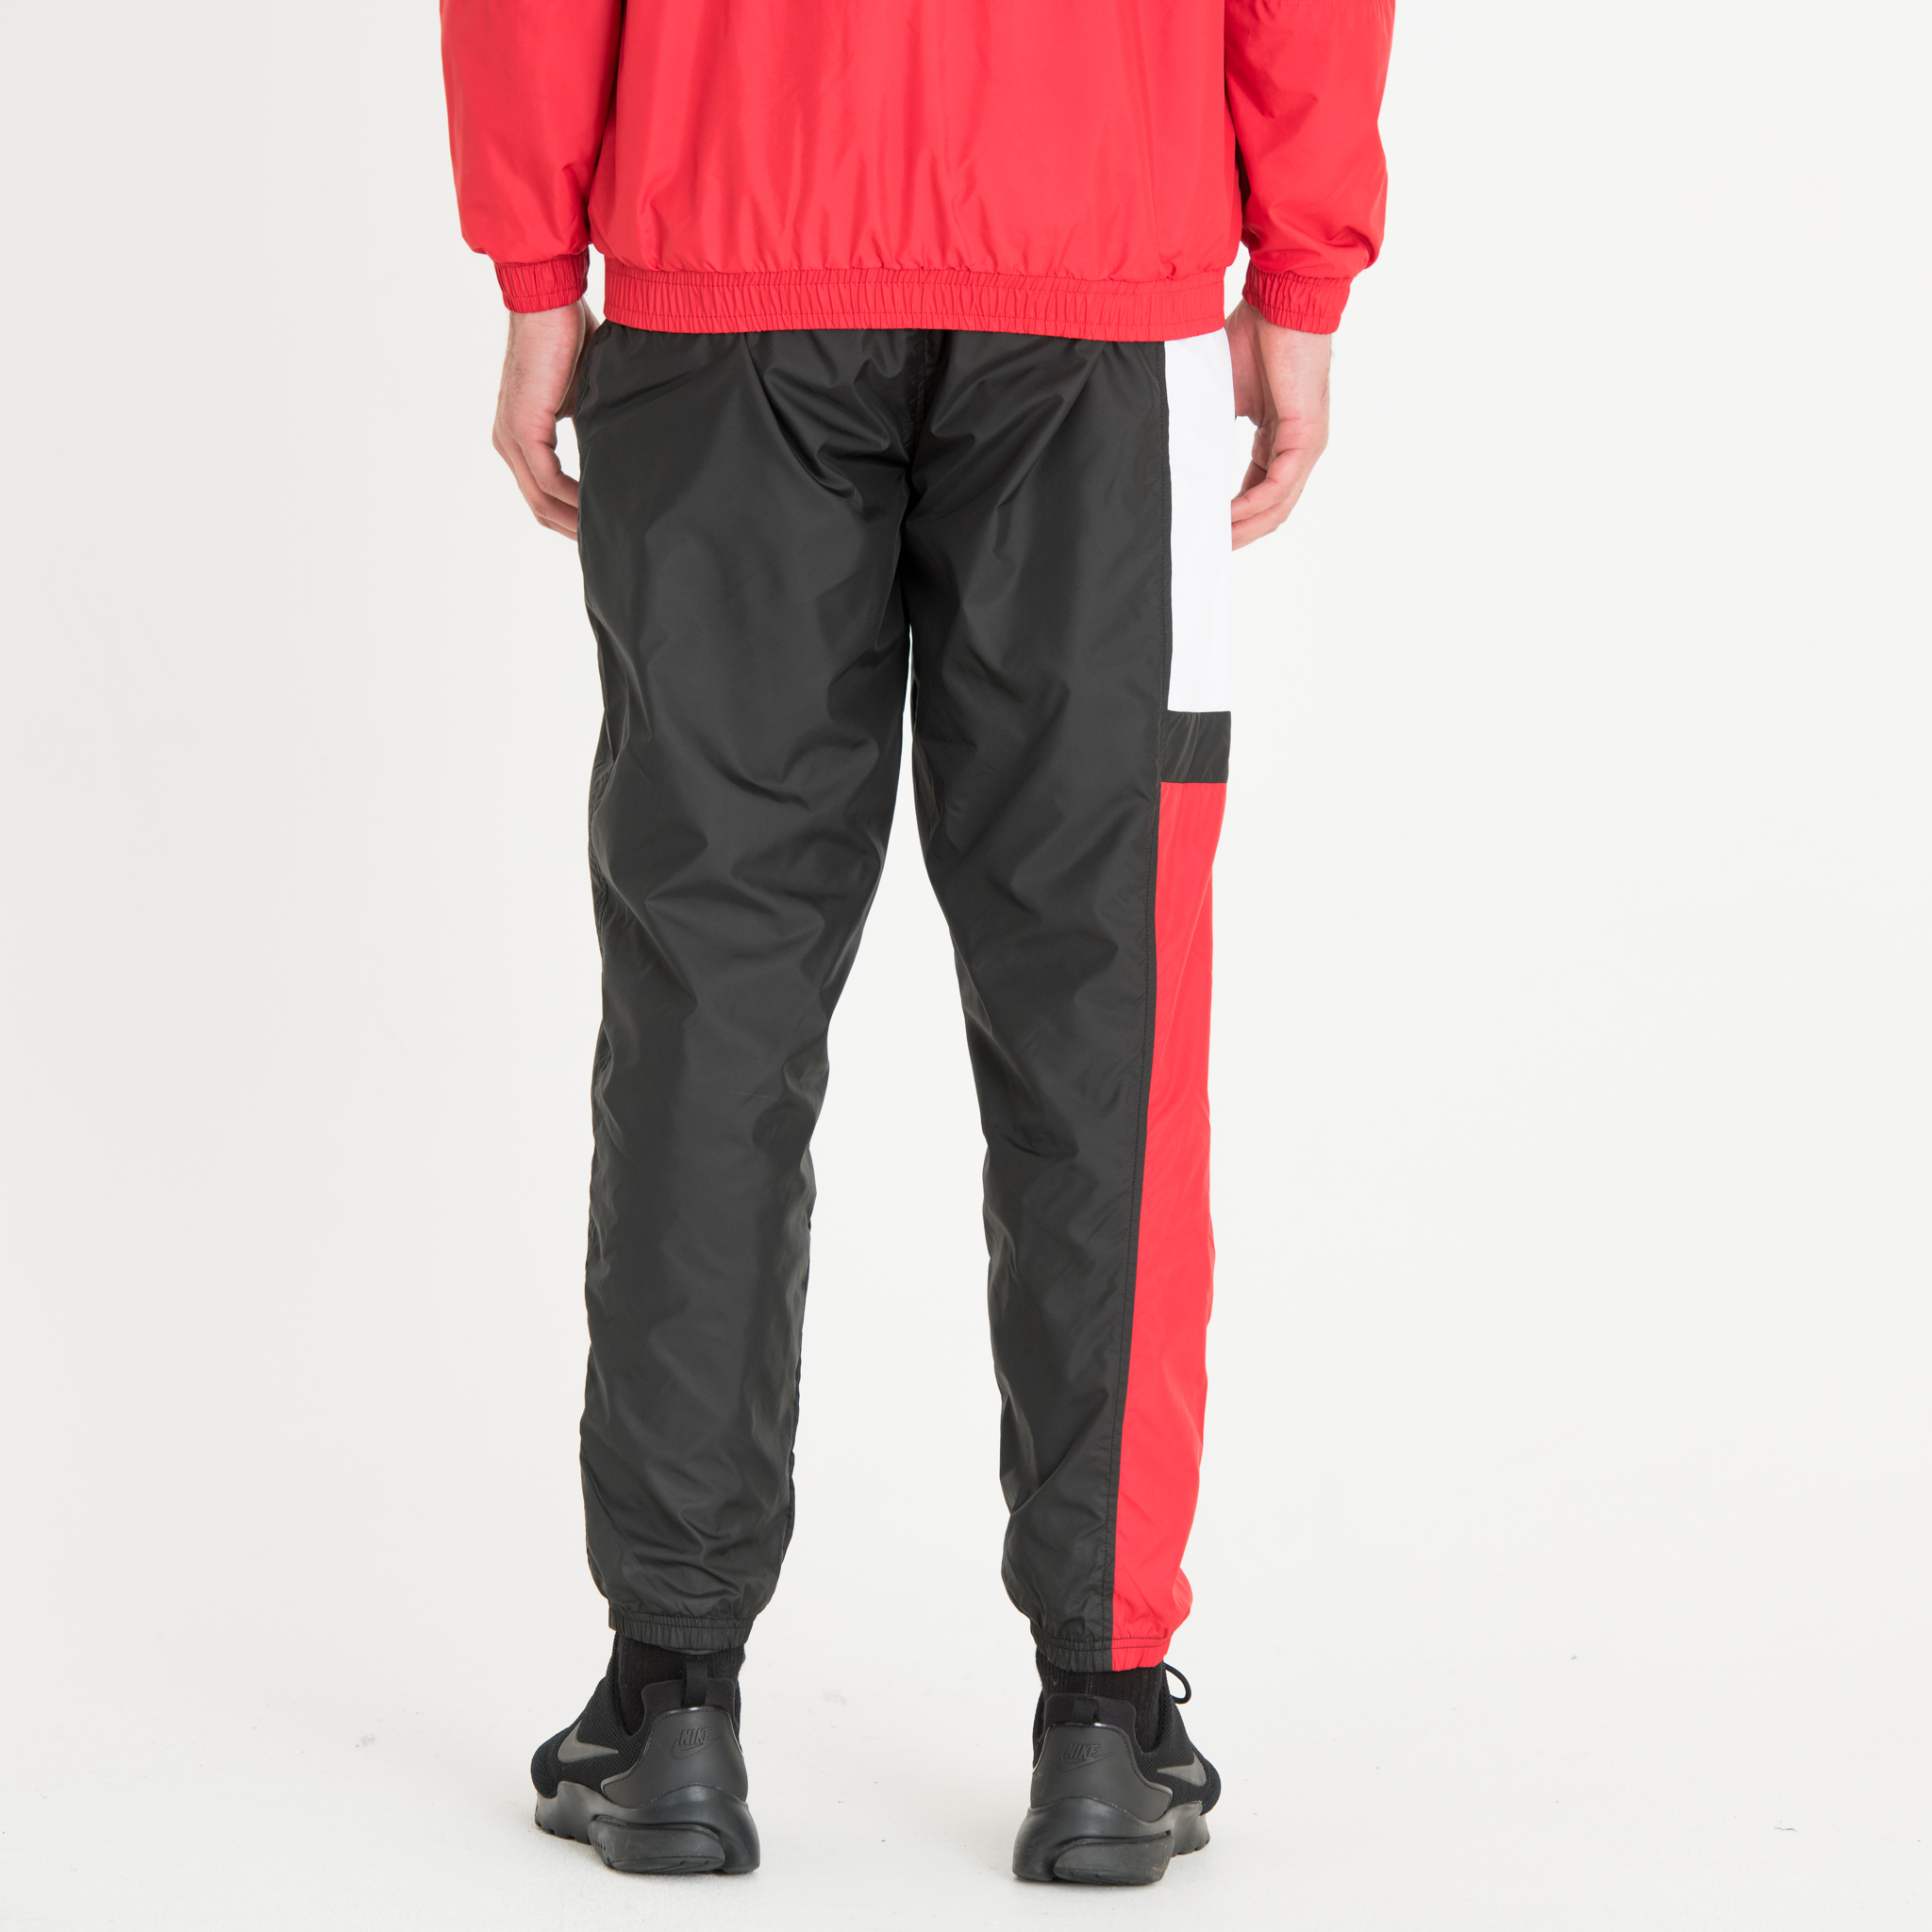 Pantalon de survêtement colour block noir, blanc et rouge New Era